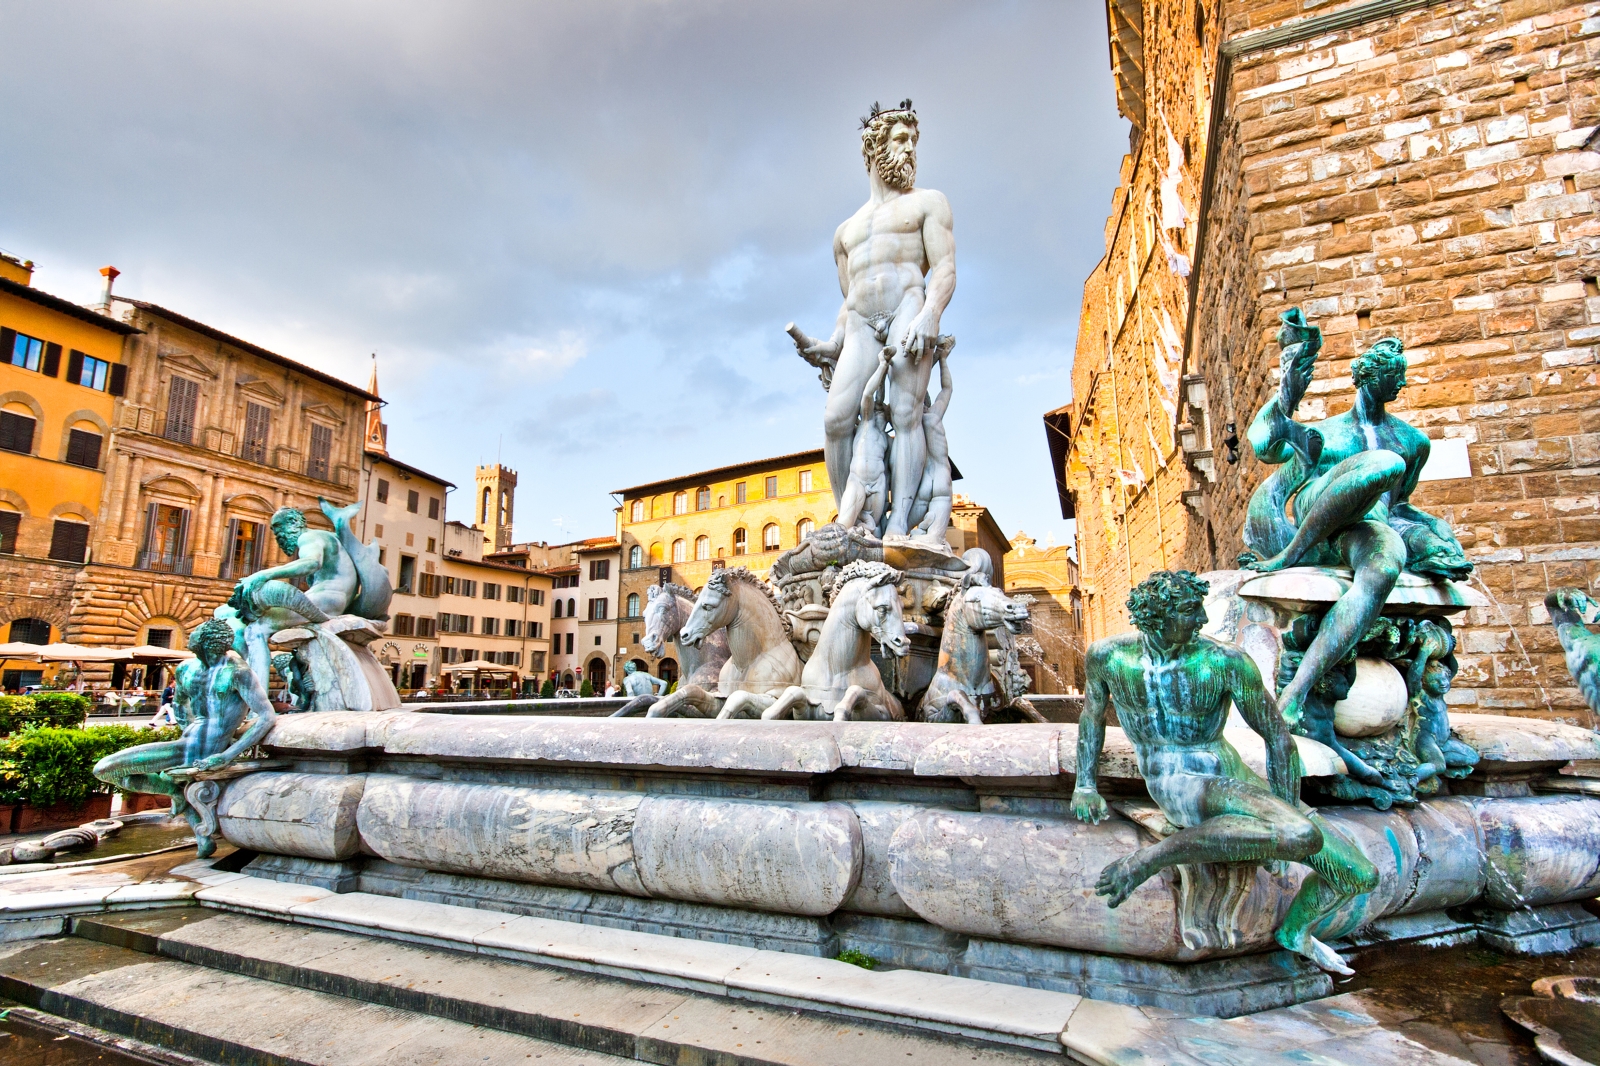 Piazza della Signoria in Florence Italy